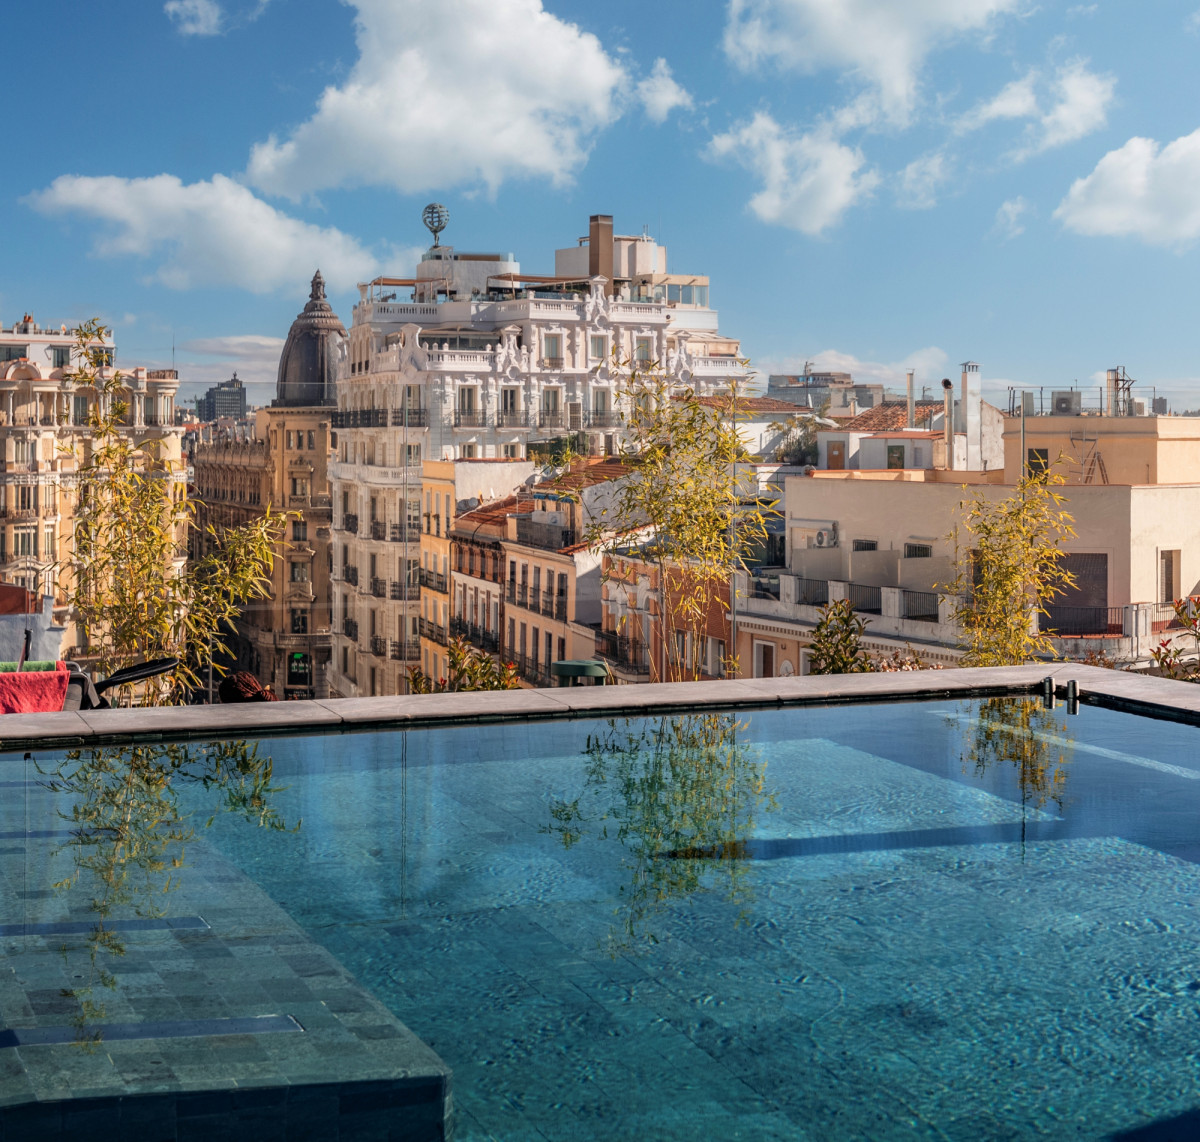 Verano en Madrid: el momento perfecto para practicar el slow tourism